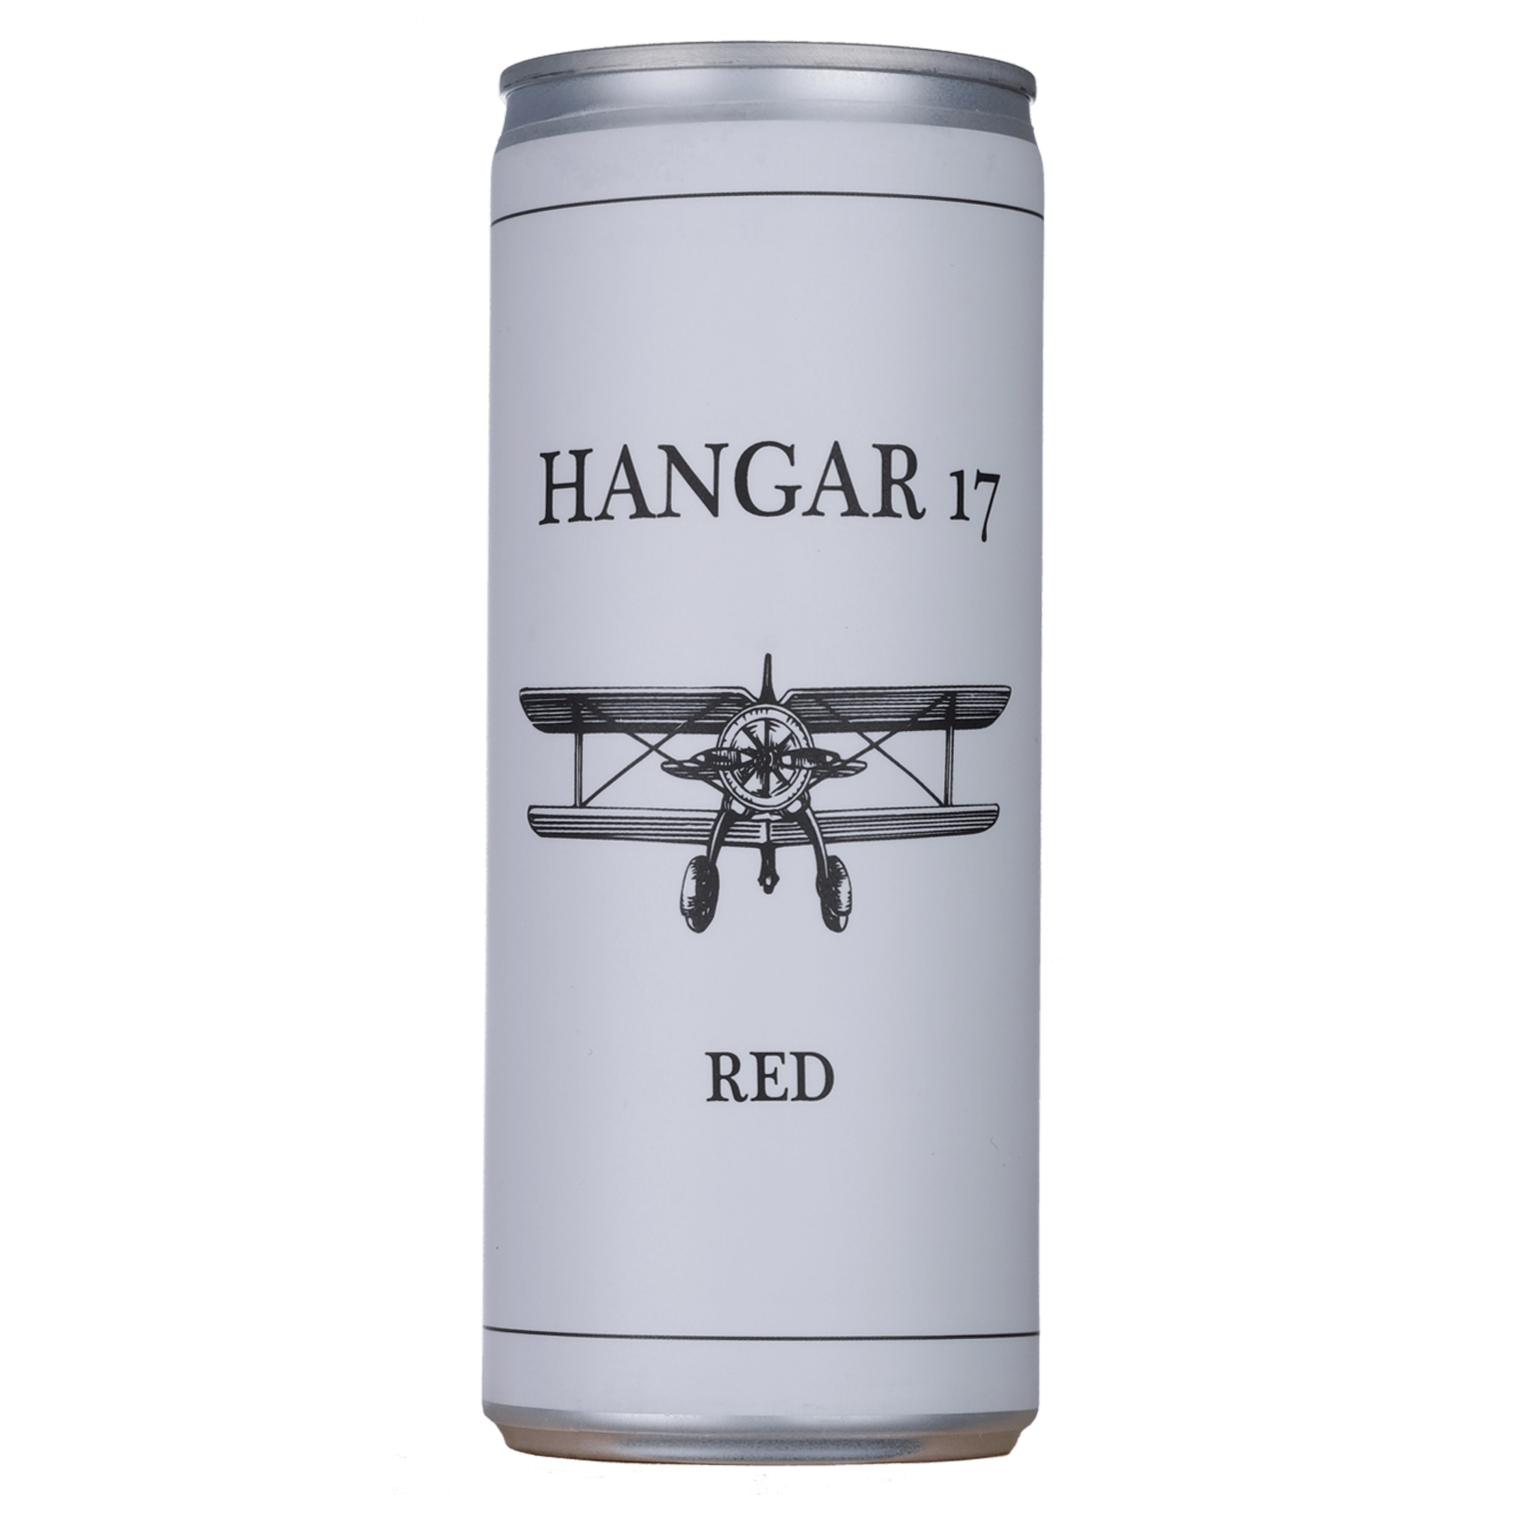 Hangar 17 Red Large 250ml